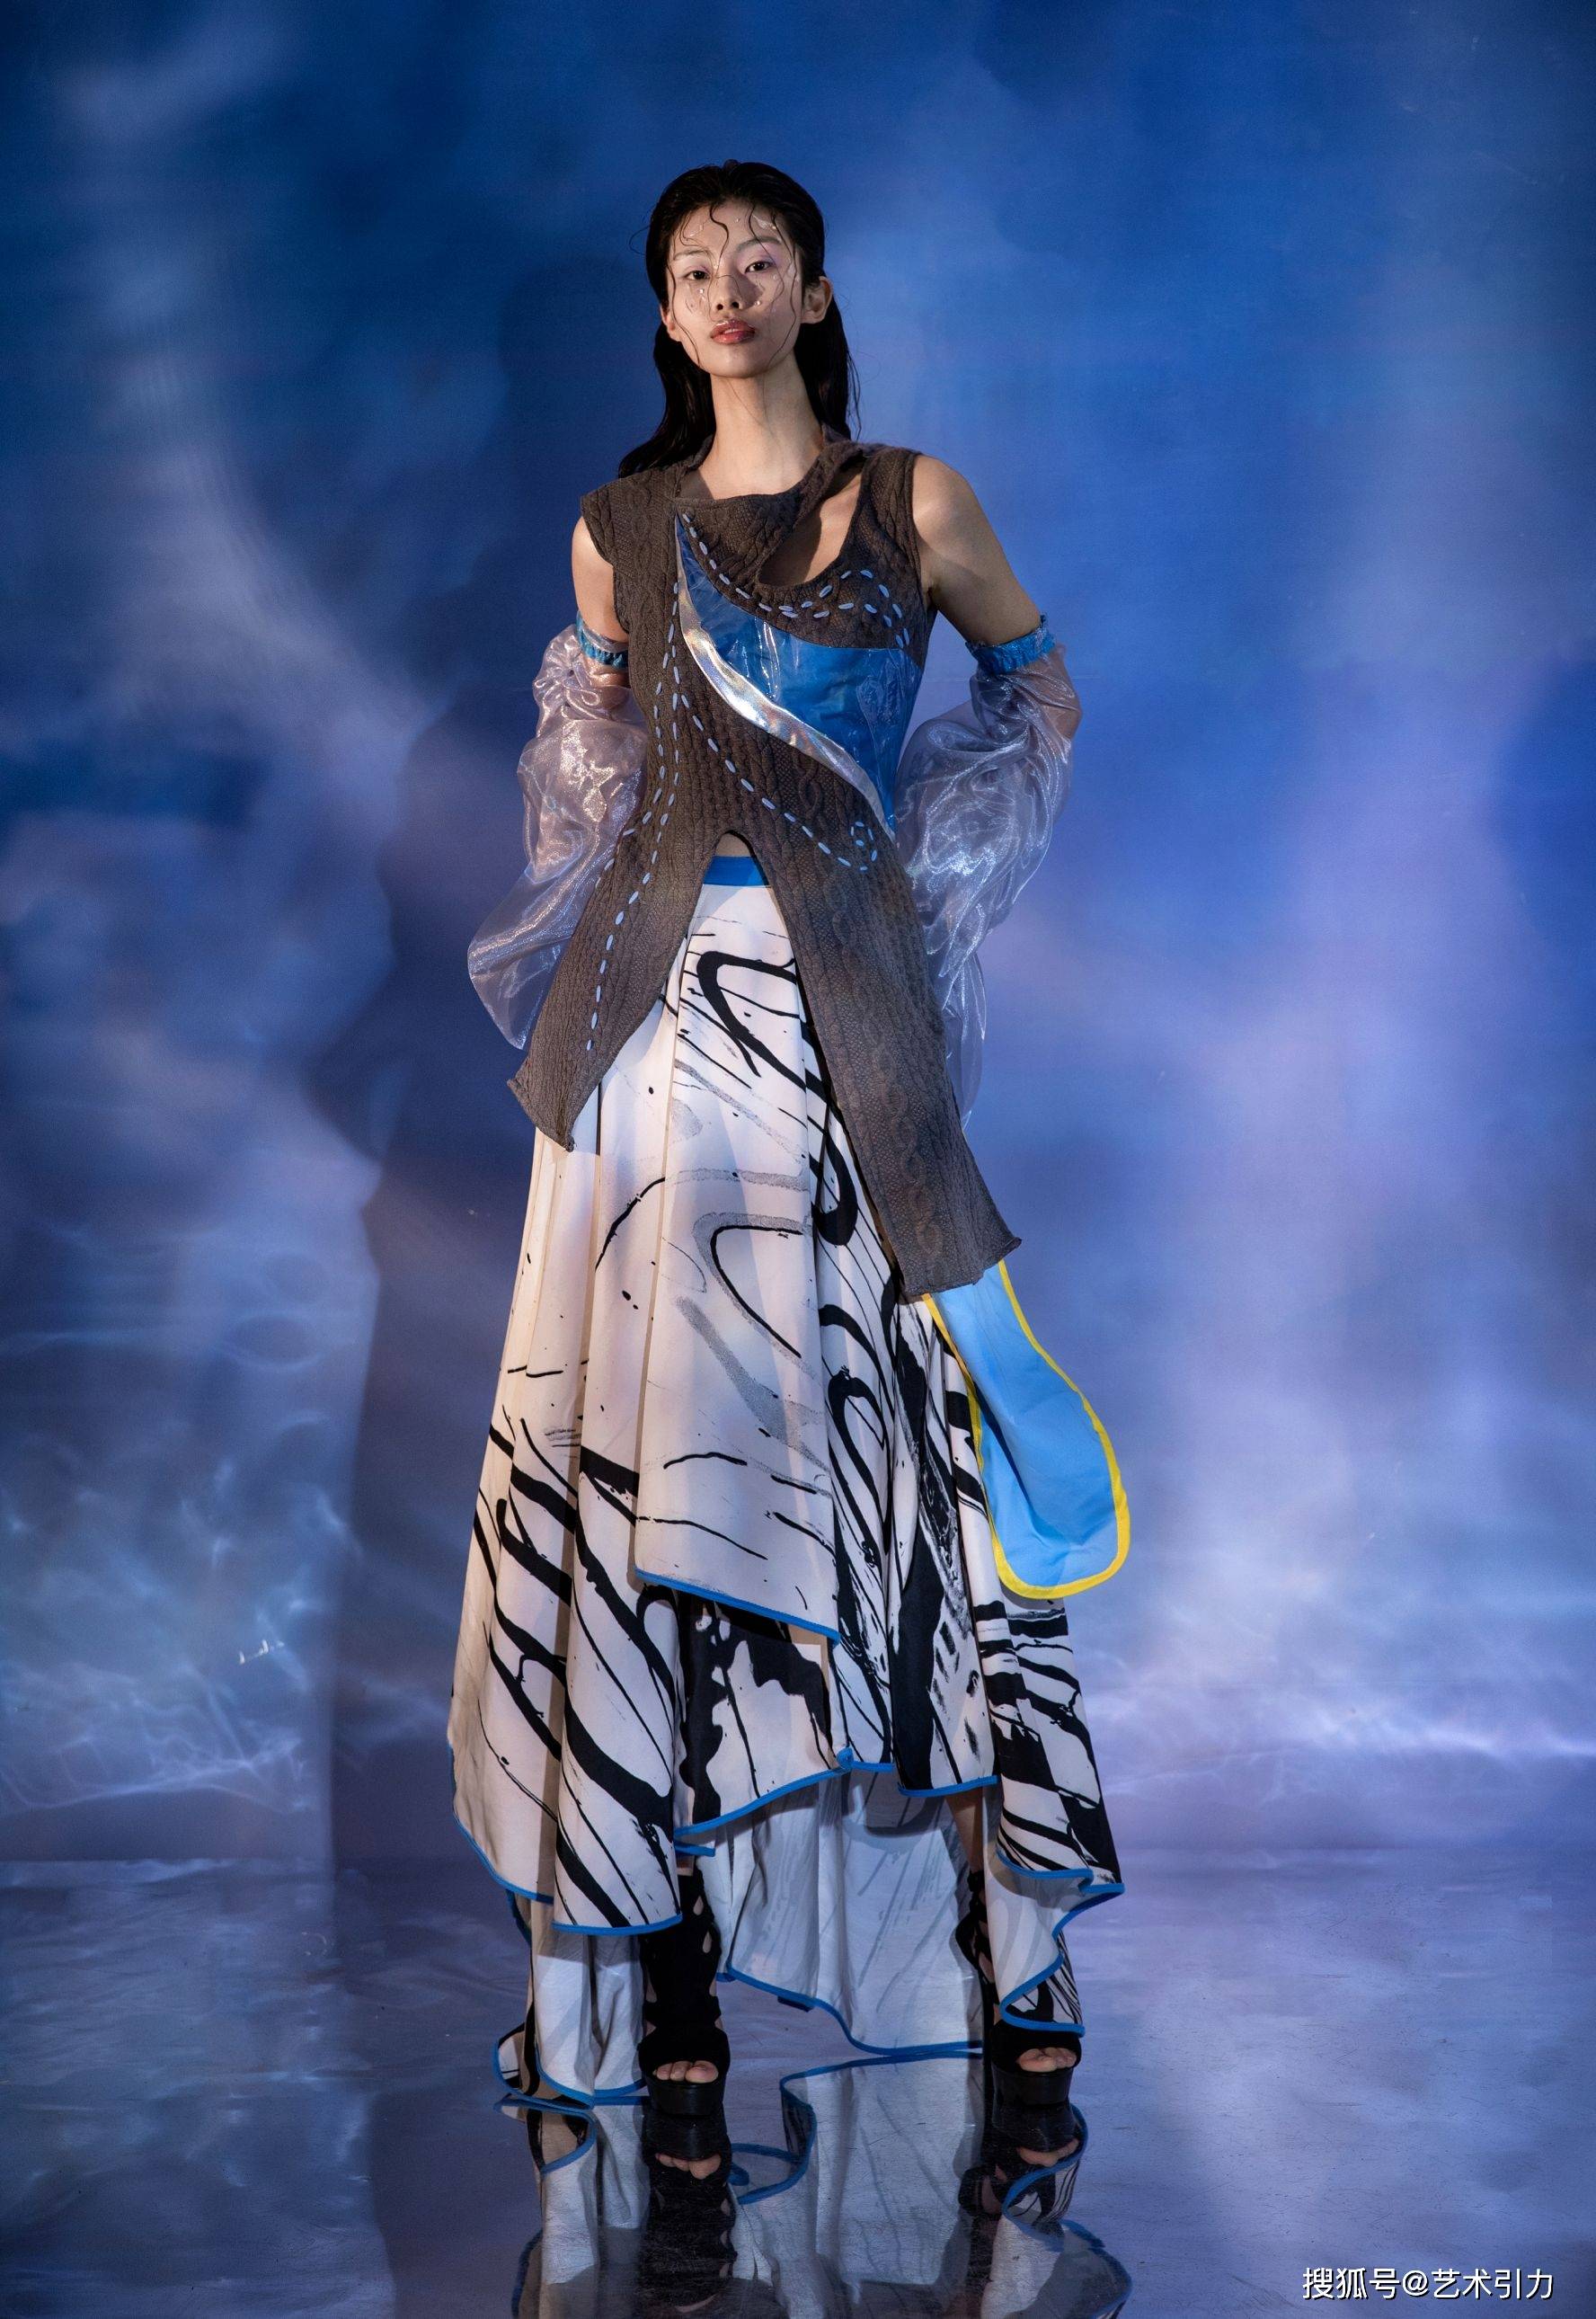 服装设计师高绮莲:水波纹形态的服饰意境营造